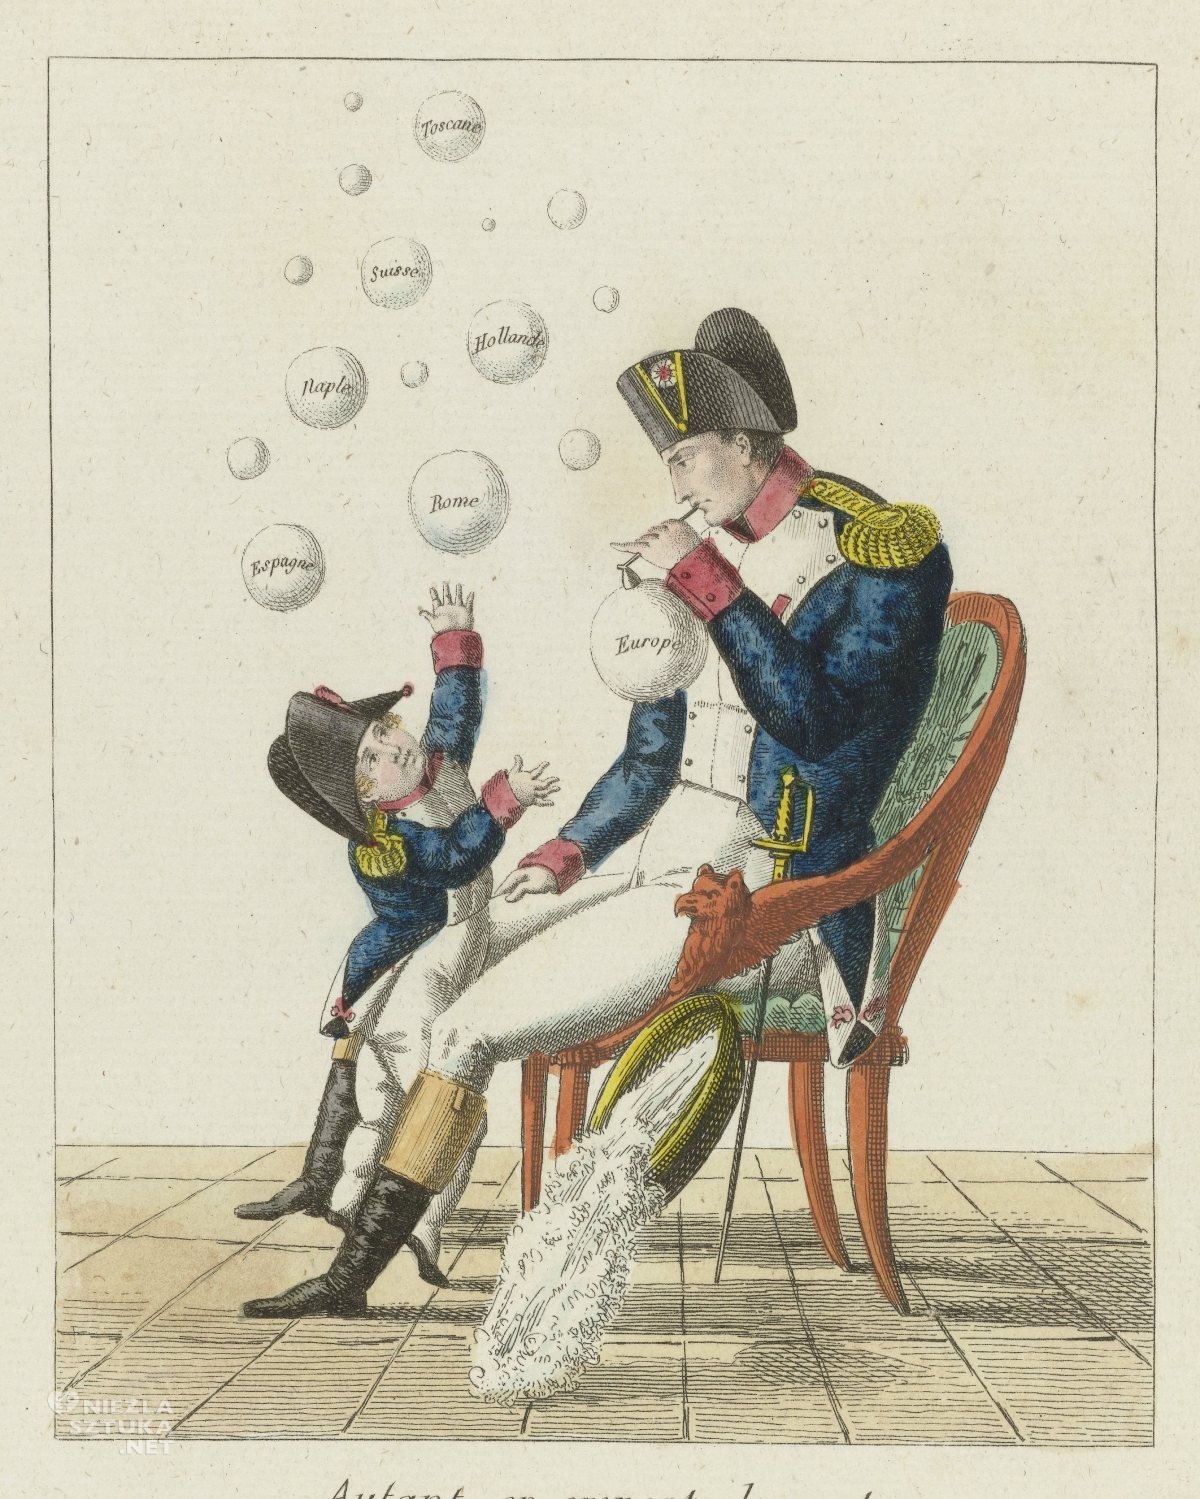 Napoleon dmuchający bańki, ilustracja, niezła sztuka